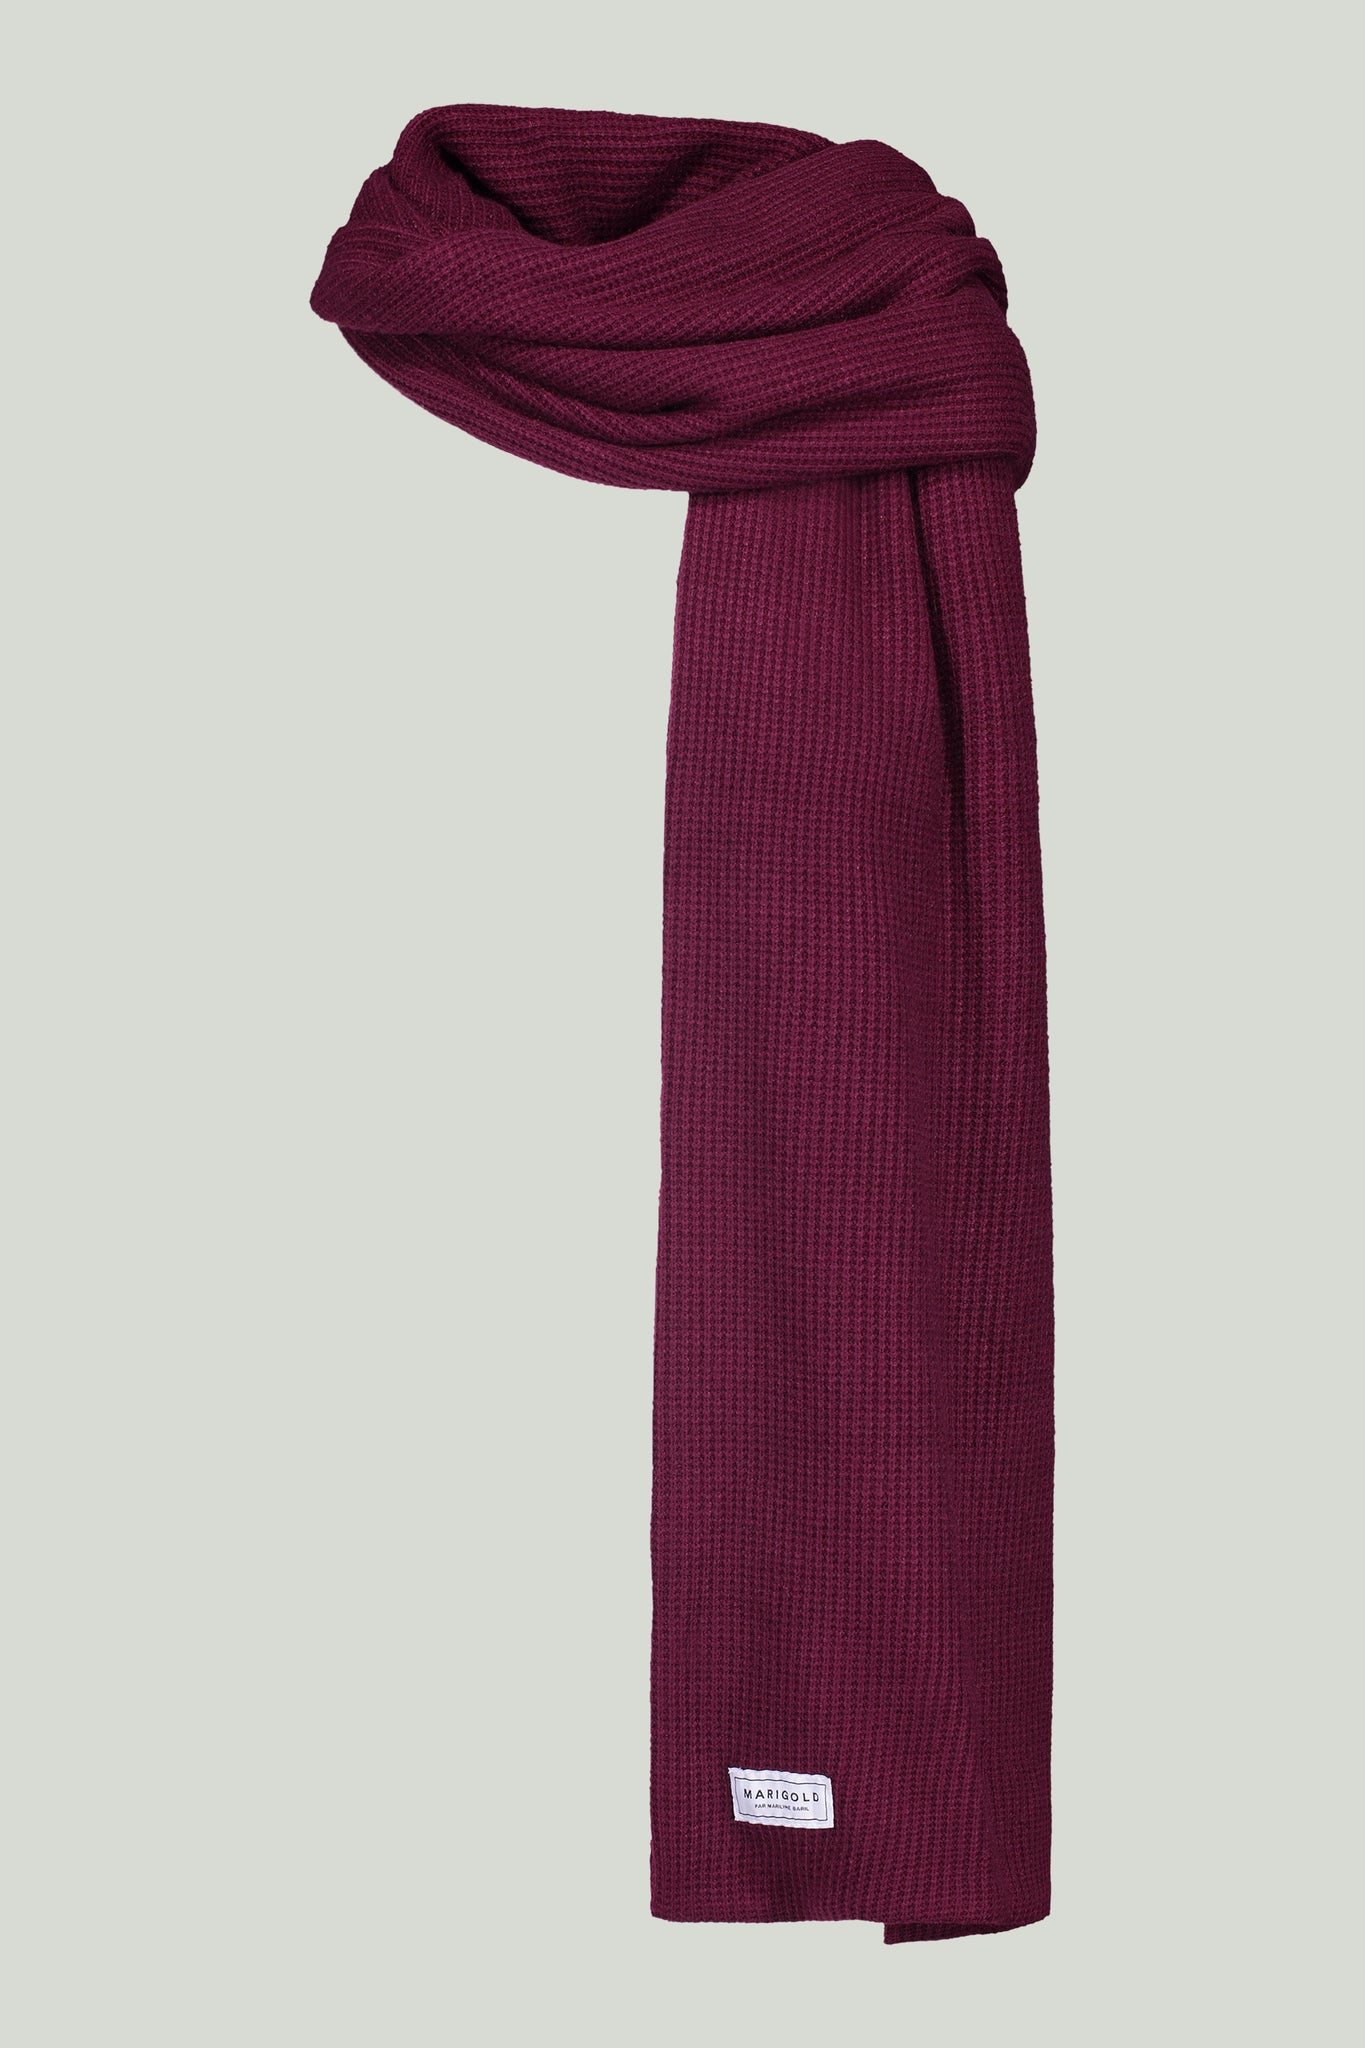 Nous avons tous besoin d'une écharpe autant en automne qu'en hiver. Avec les tricots utilisés dans notre collection nous en avons créées ! Ils existent dans nos motifs unis mais aussi dans notre motif exclusif. Chaque exemplaire est confectionné avec soin à Montréal, ajoutant une dimension locale à son charme.